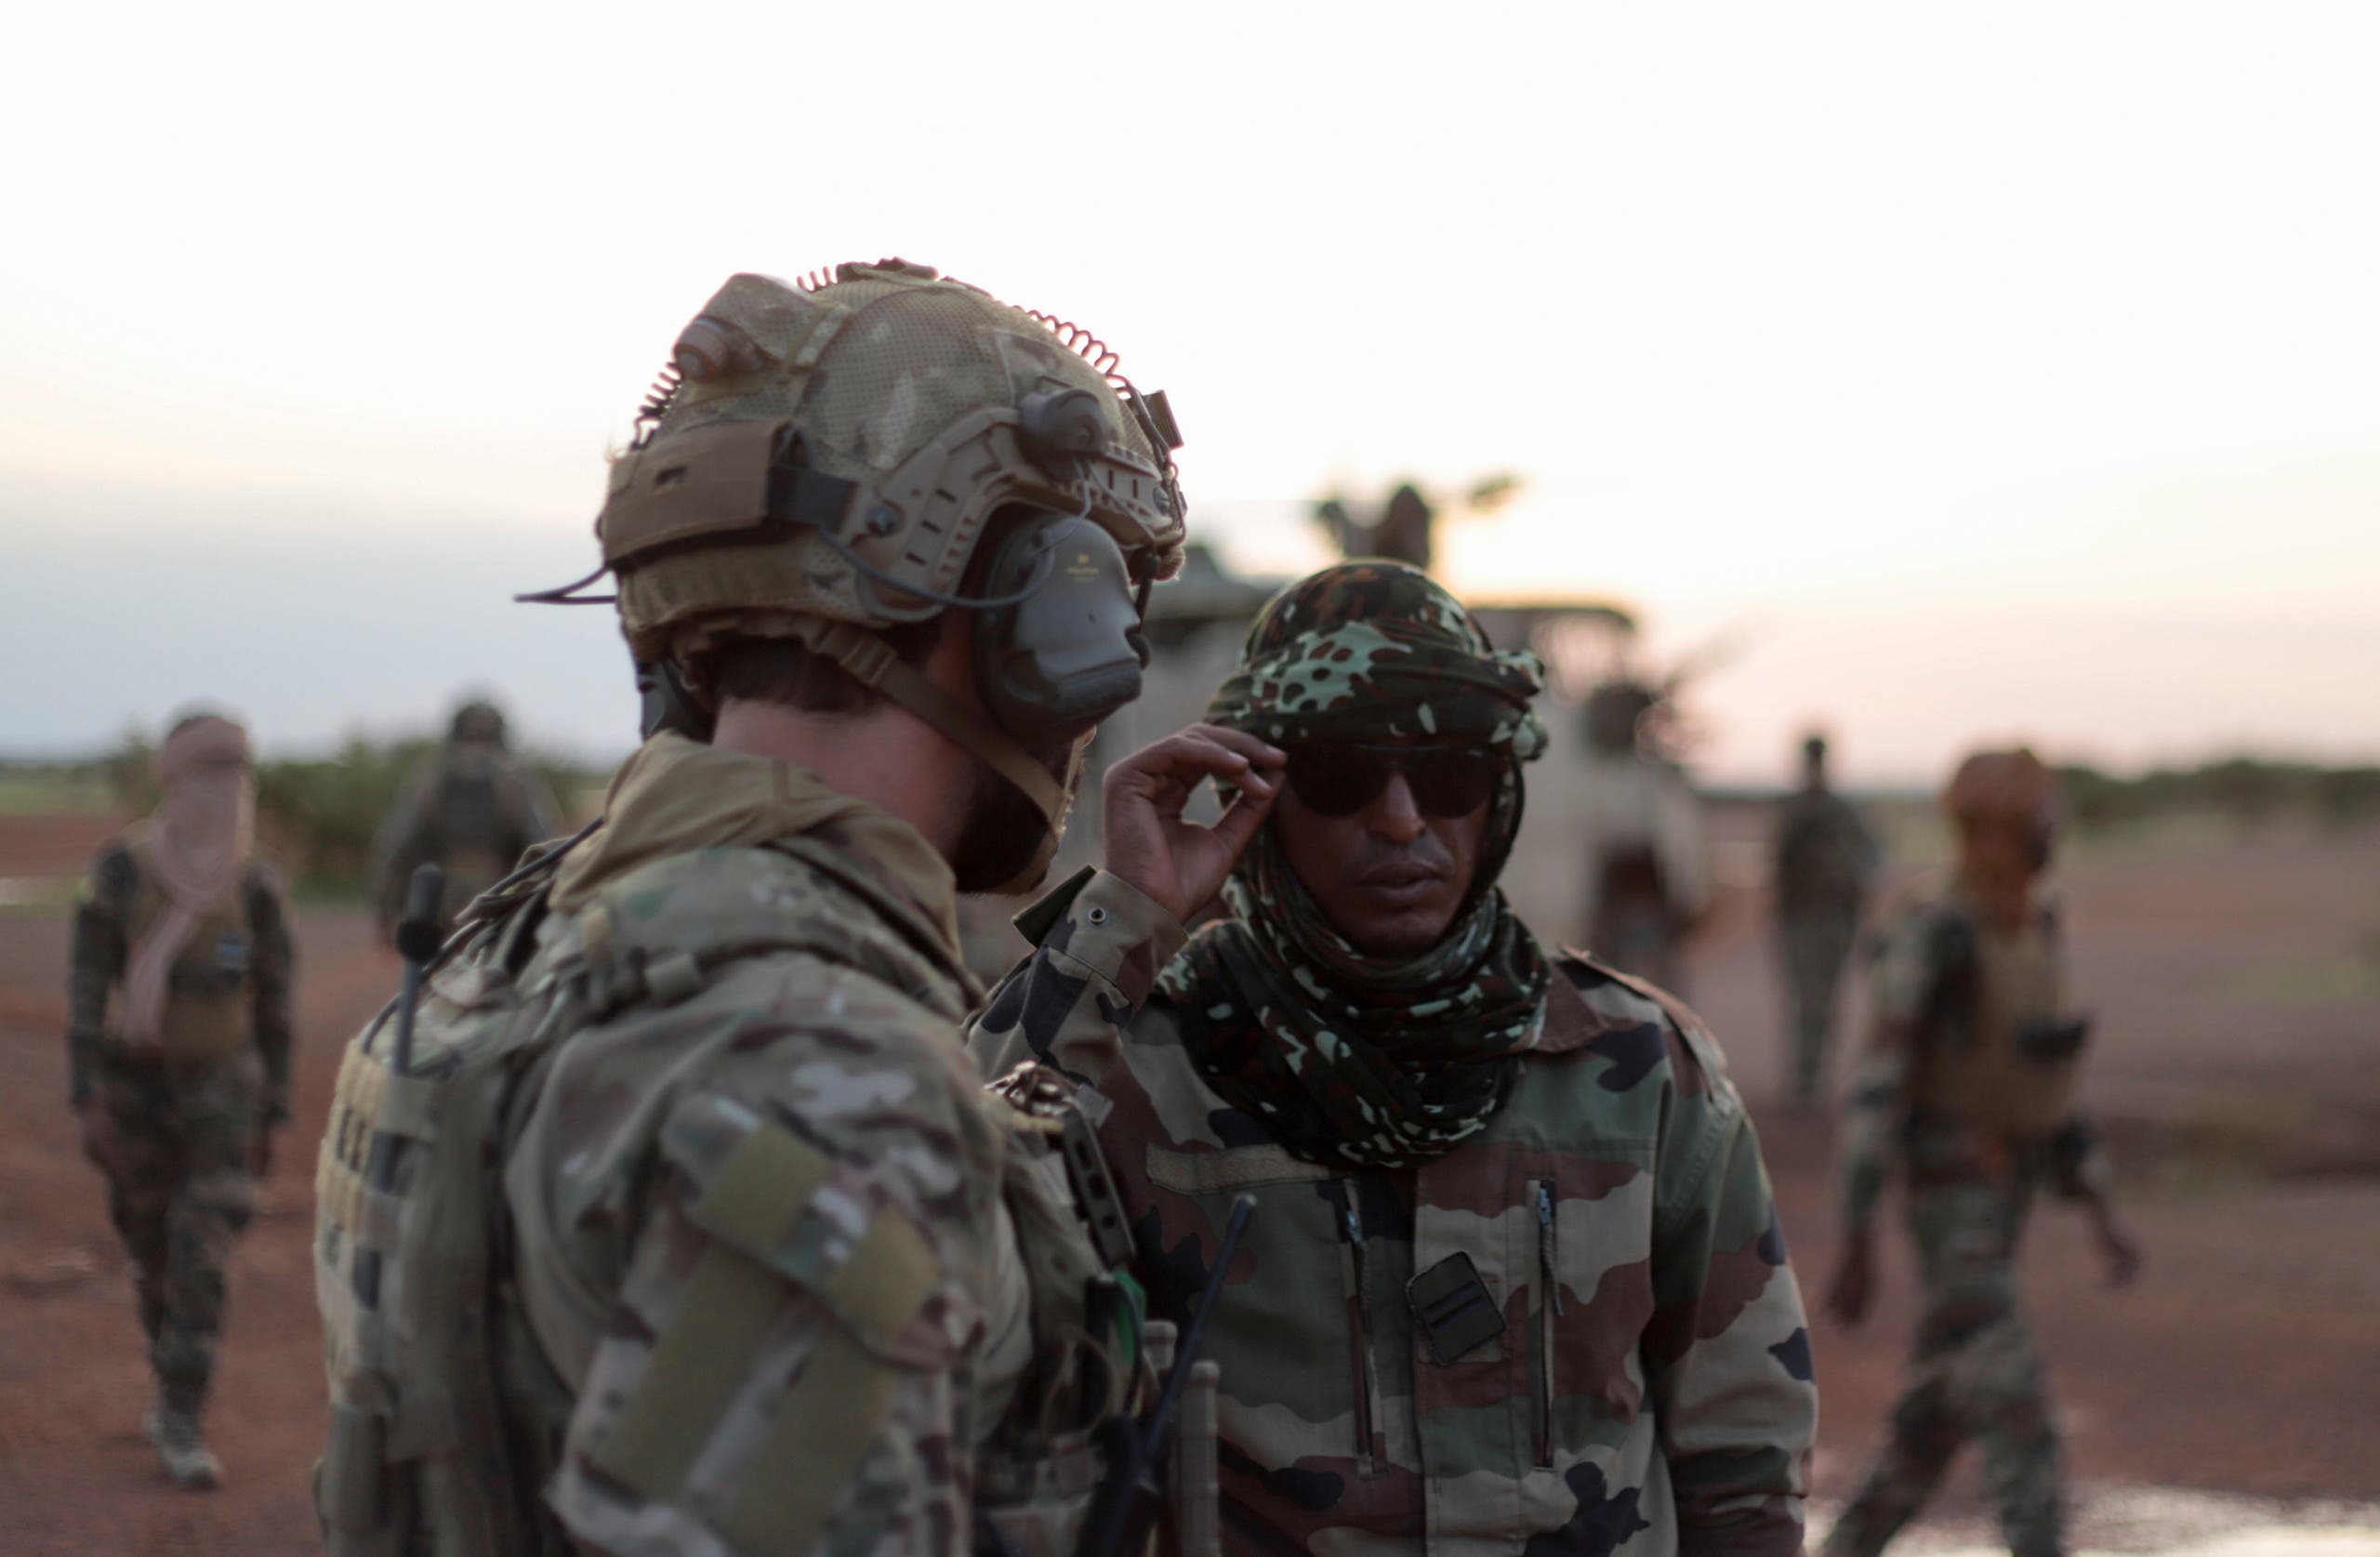 دورية لقوة عسكرية أوروبية في منطقة الساحل تجوب الحدود بين مالي والنيجر في أغسطس الماضي